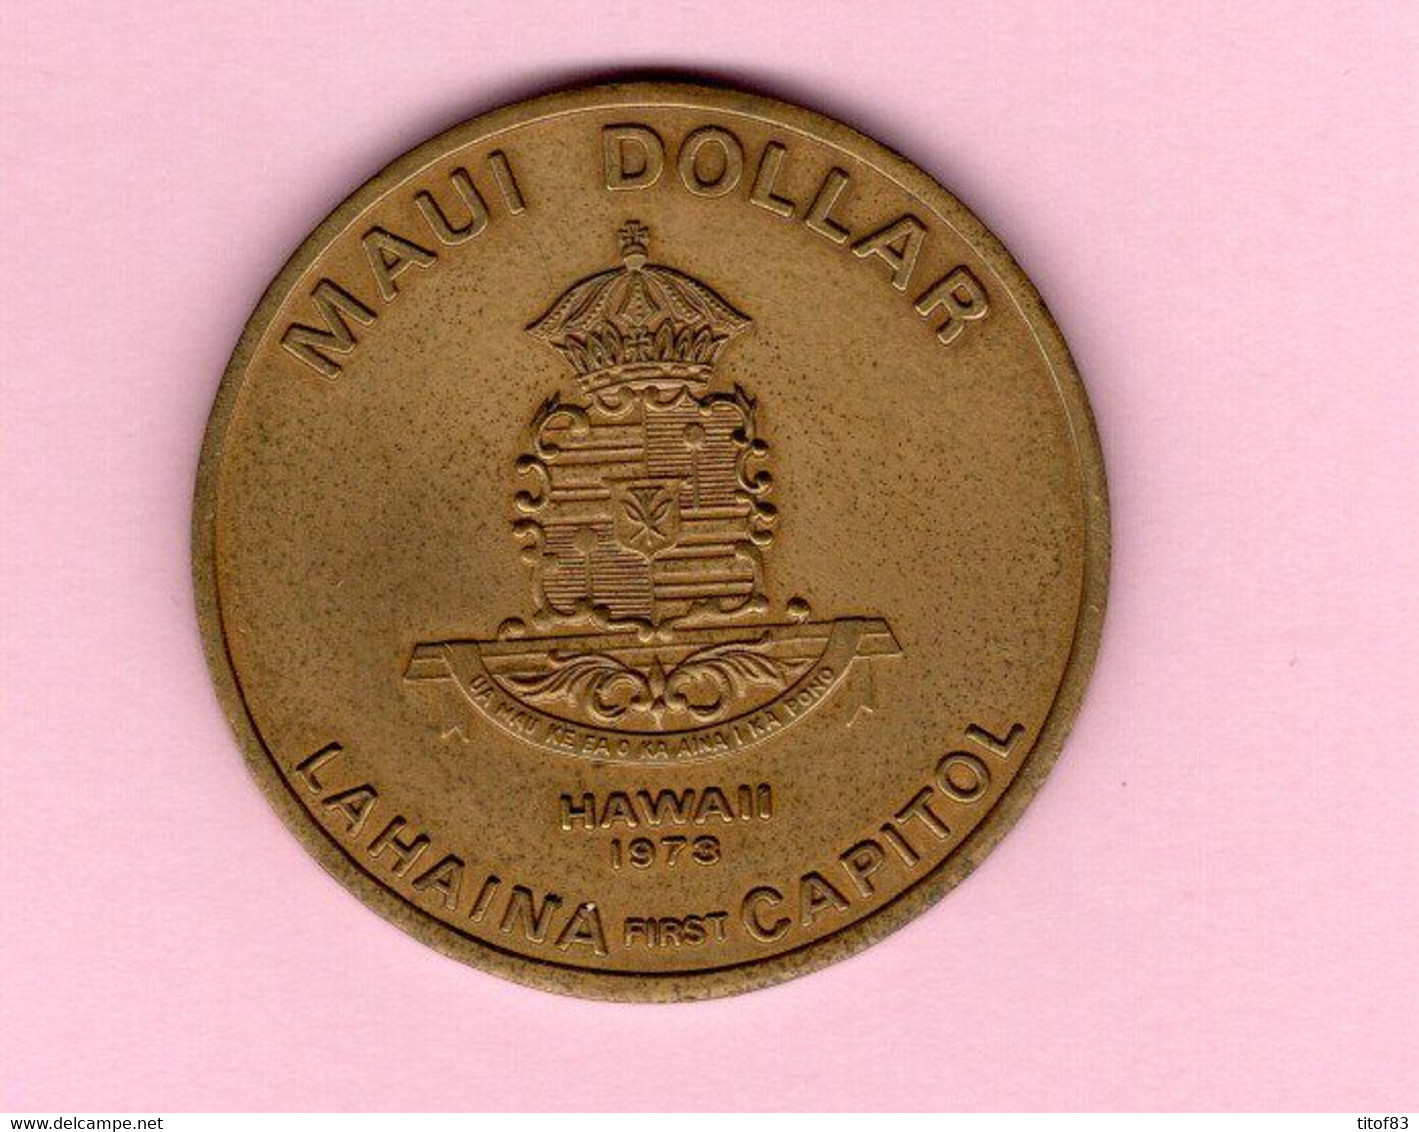 Etats-Unis / USA - 2 Pièces 5 Cents Liberty "V Cents" Nickel 1905-1910 + HAWAII, 1 Maui Dollar 1973 Chambre De Commerce - 1883-1913: Liberty (Liberté)